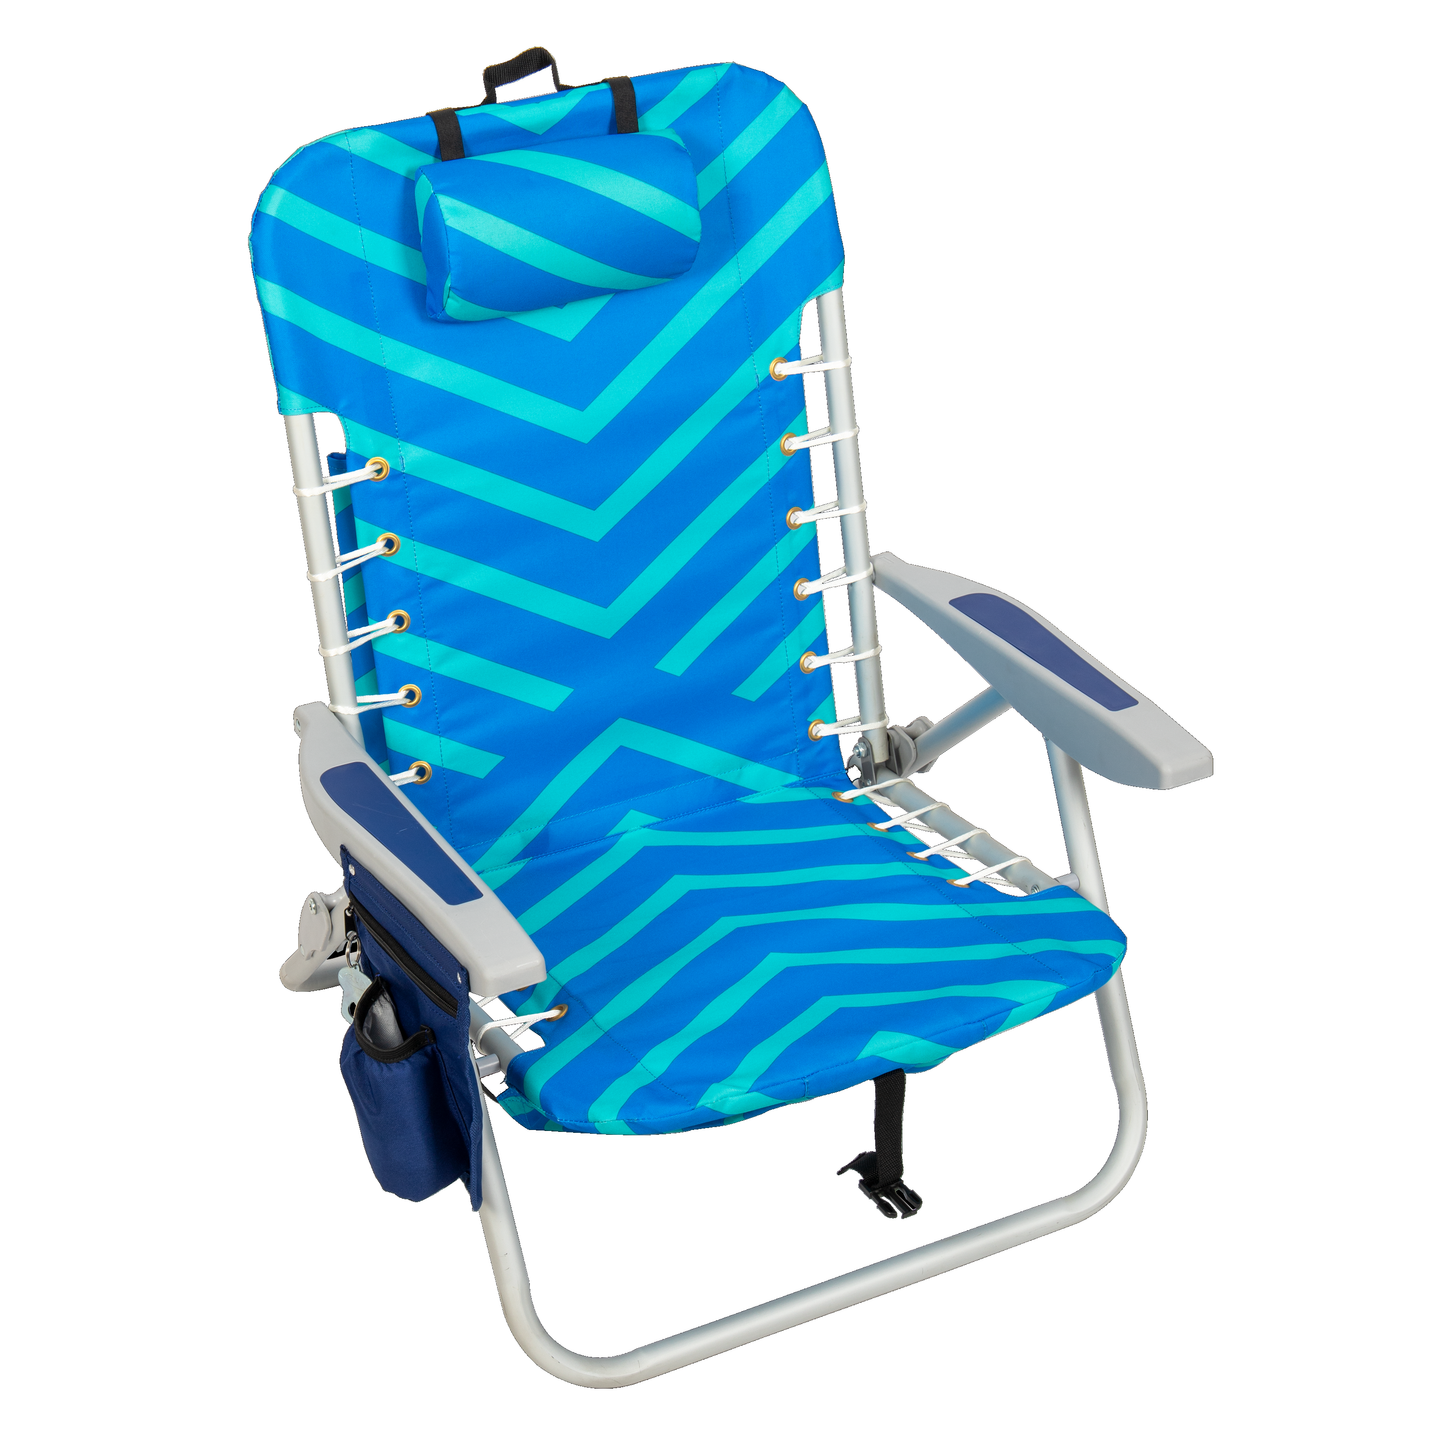 Rio Beach 4 position Chevron Beach Chair